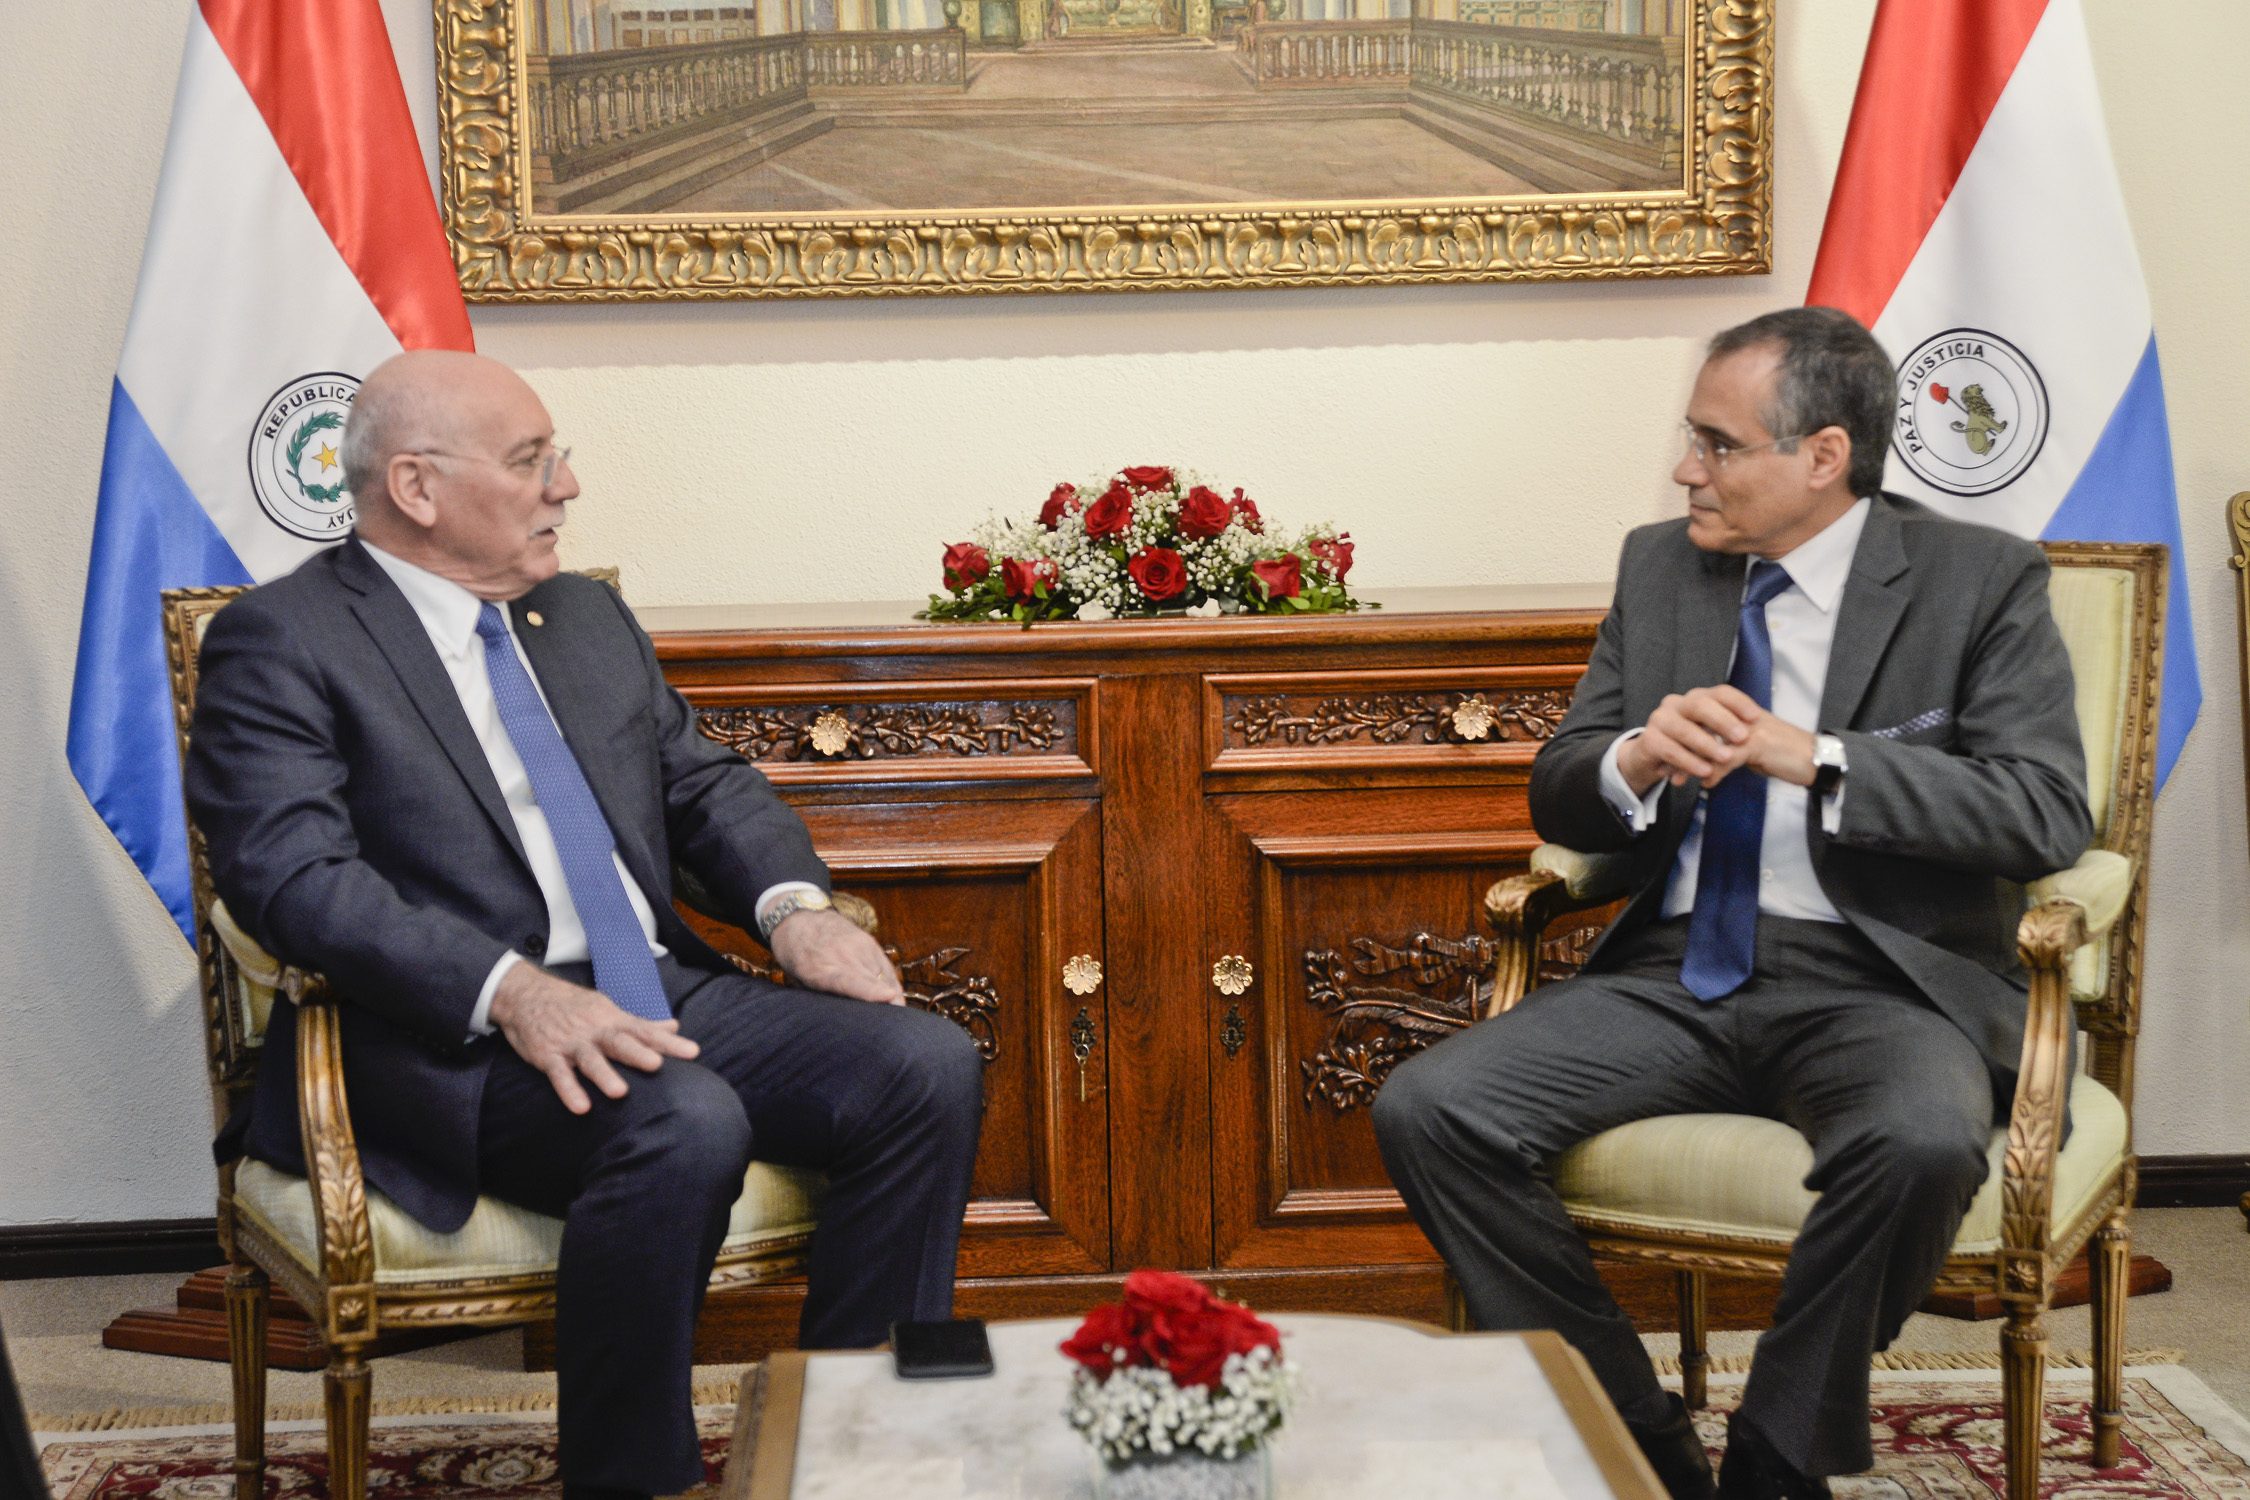 En el período de gobierno de cinco años del Presidente Cartes, las relaciones con Marruecos se consolidaron plenamente